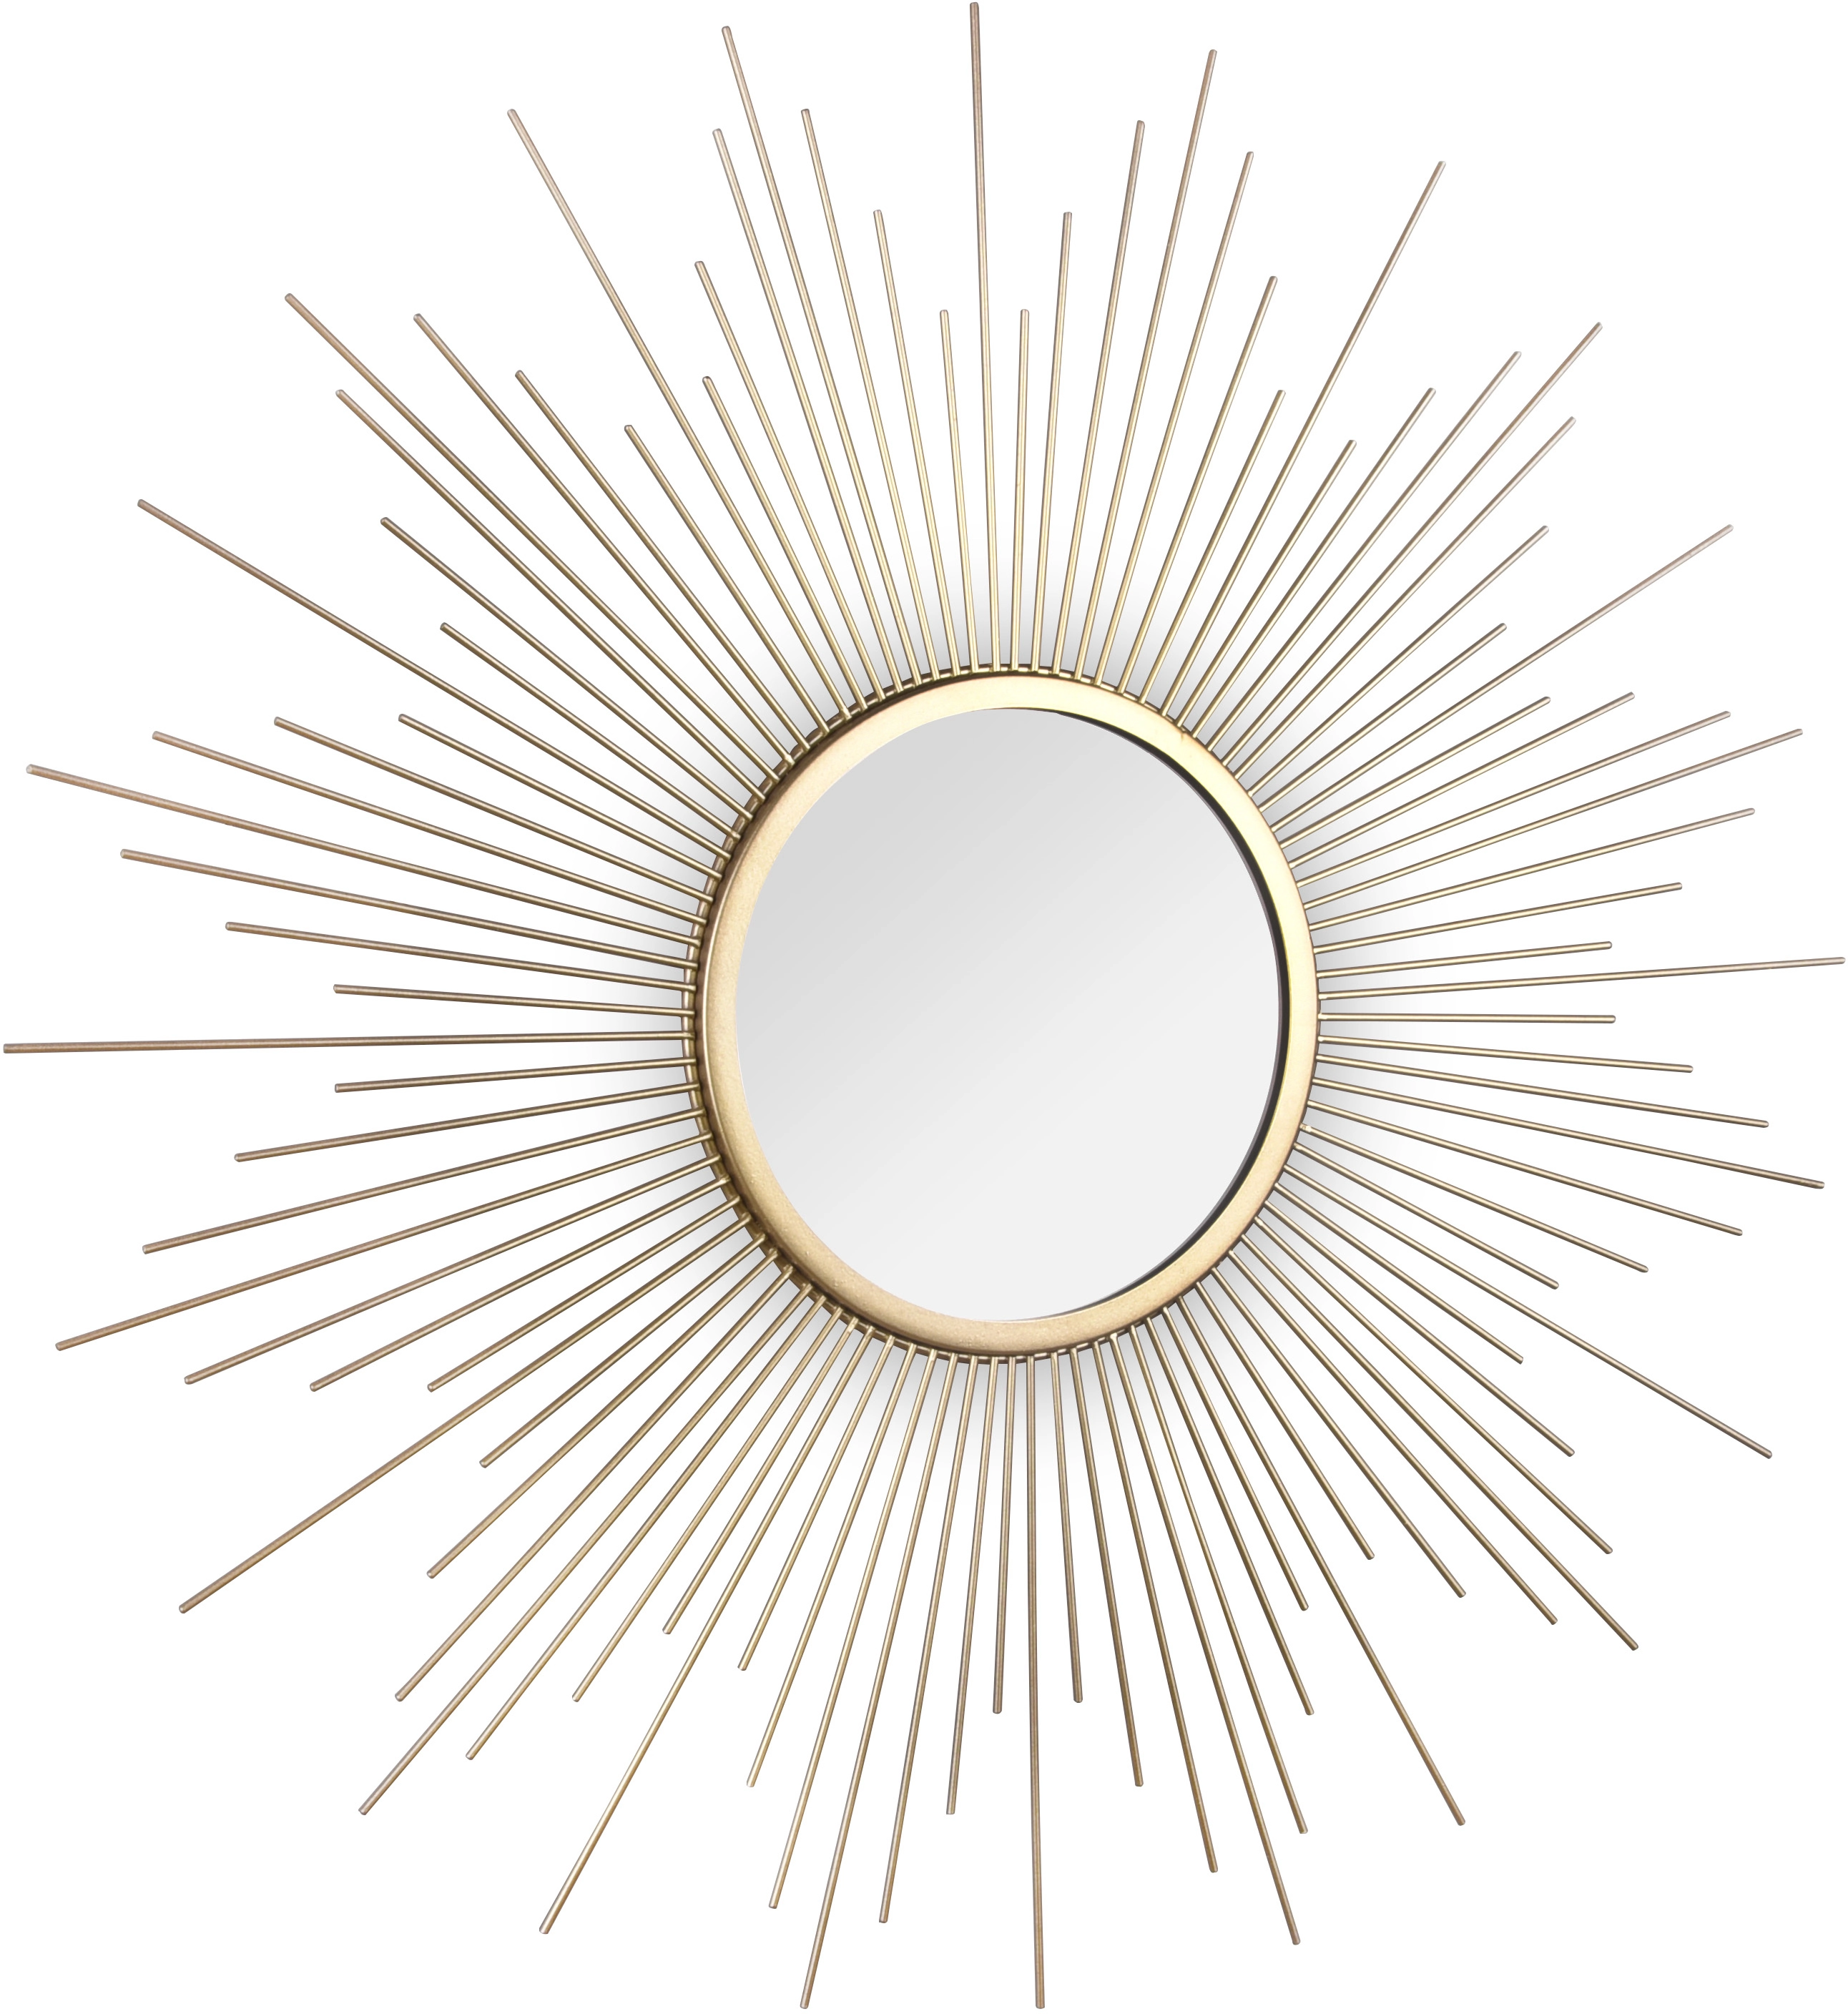 Mirrors & More Dekospiegel Sunny Gold Ø 60 cm kaufen bei OBI